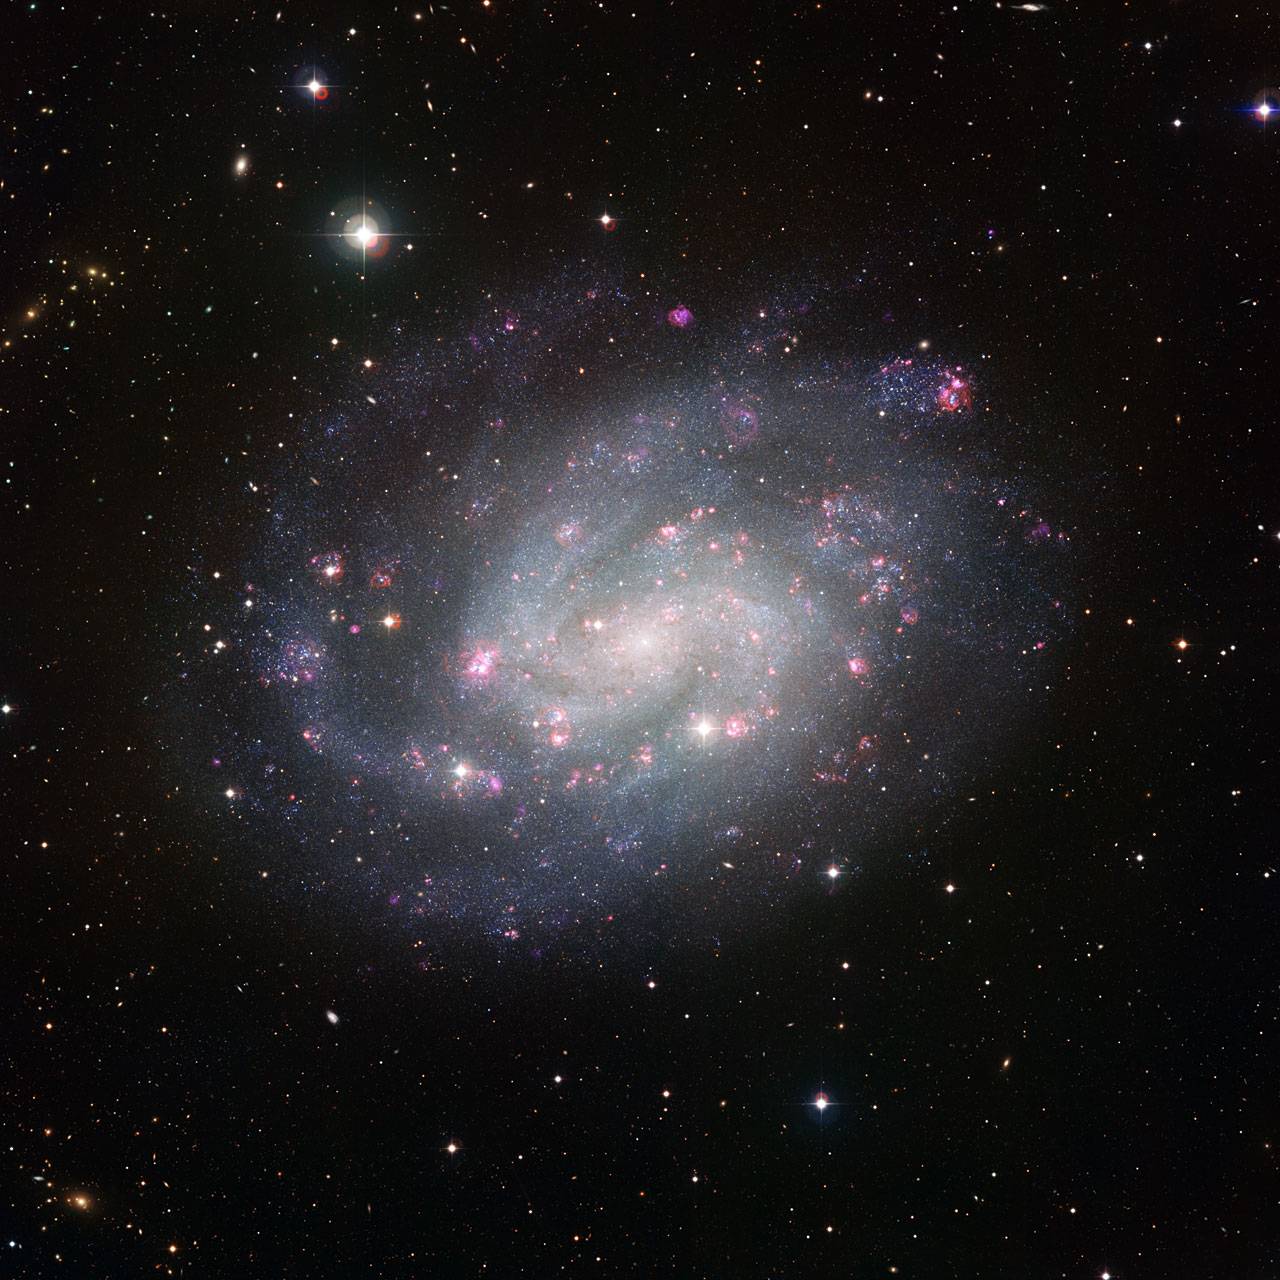 Nueva imagen de un cercano ejemplar galáctico